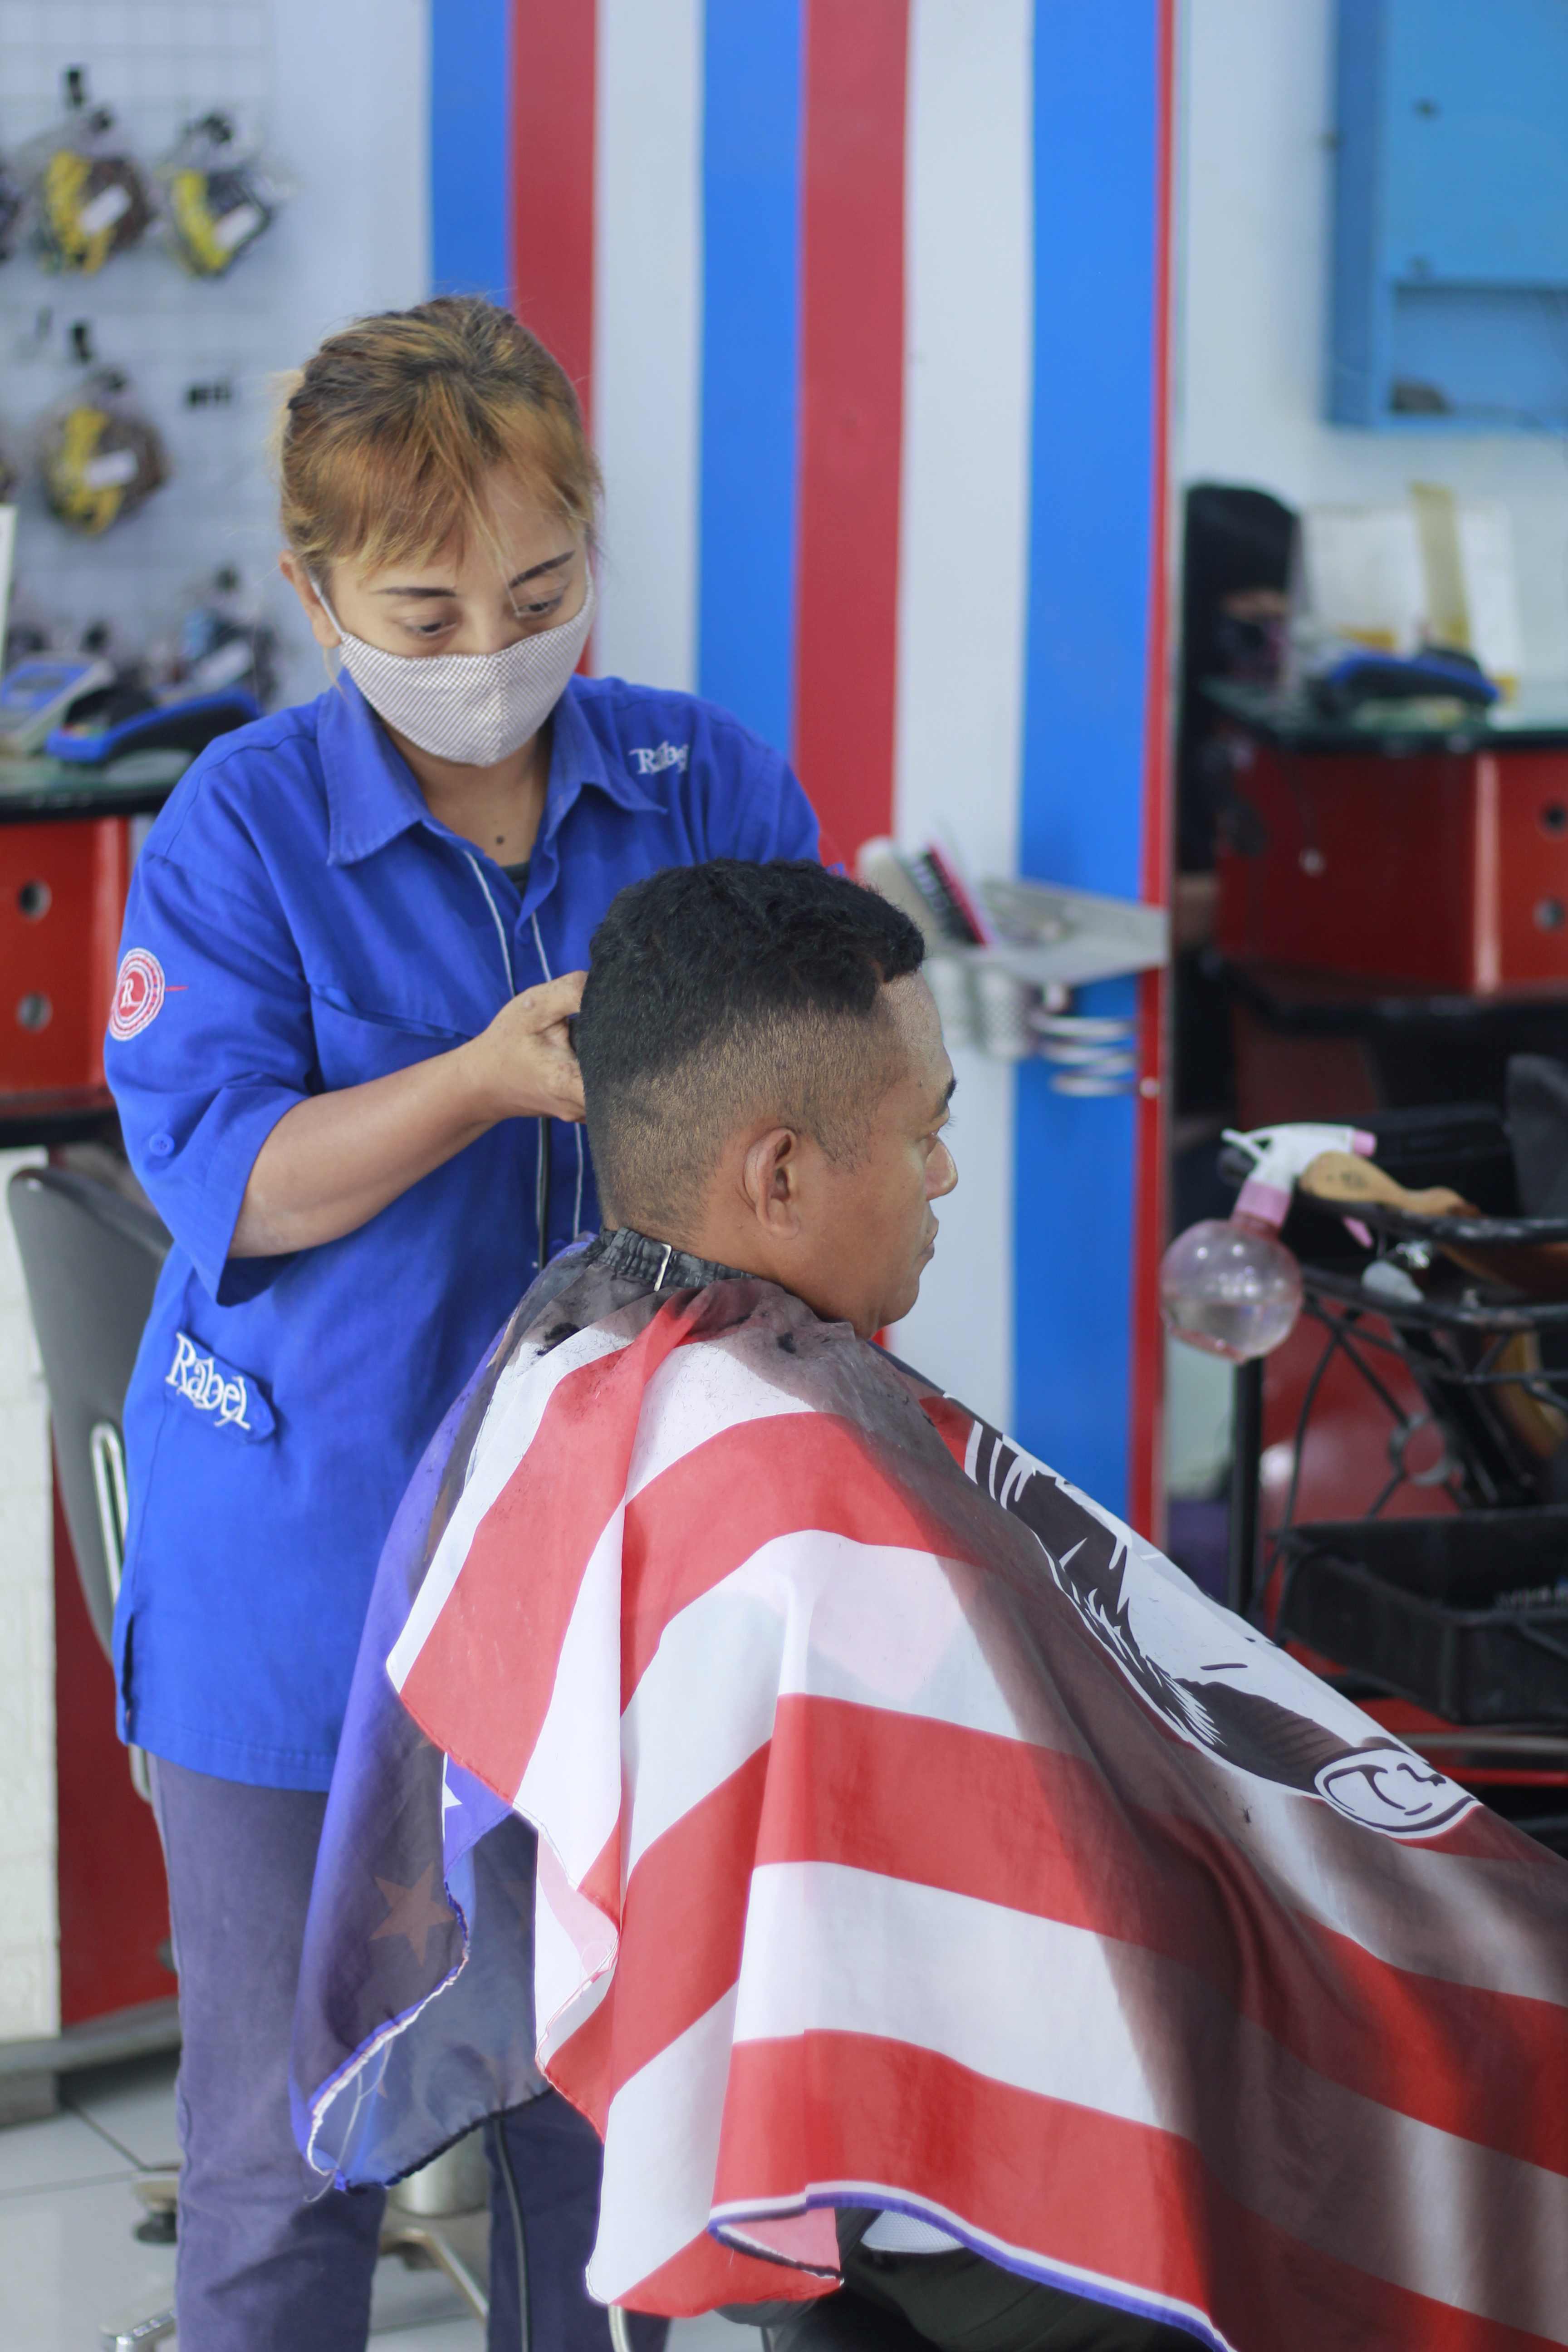 Lokasi Tempat Cukur Rambut Di Kelurahan Tlogowaru Terbaik